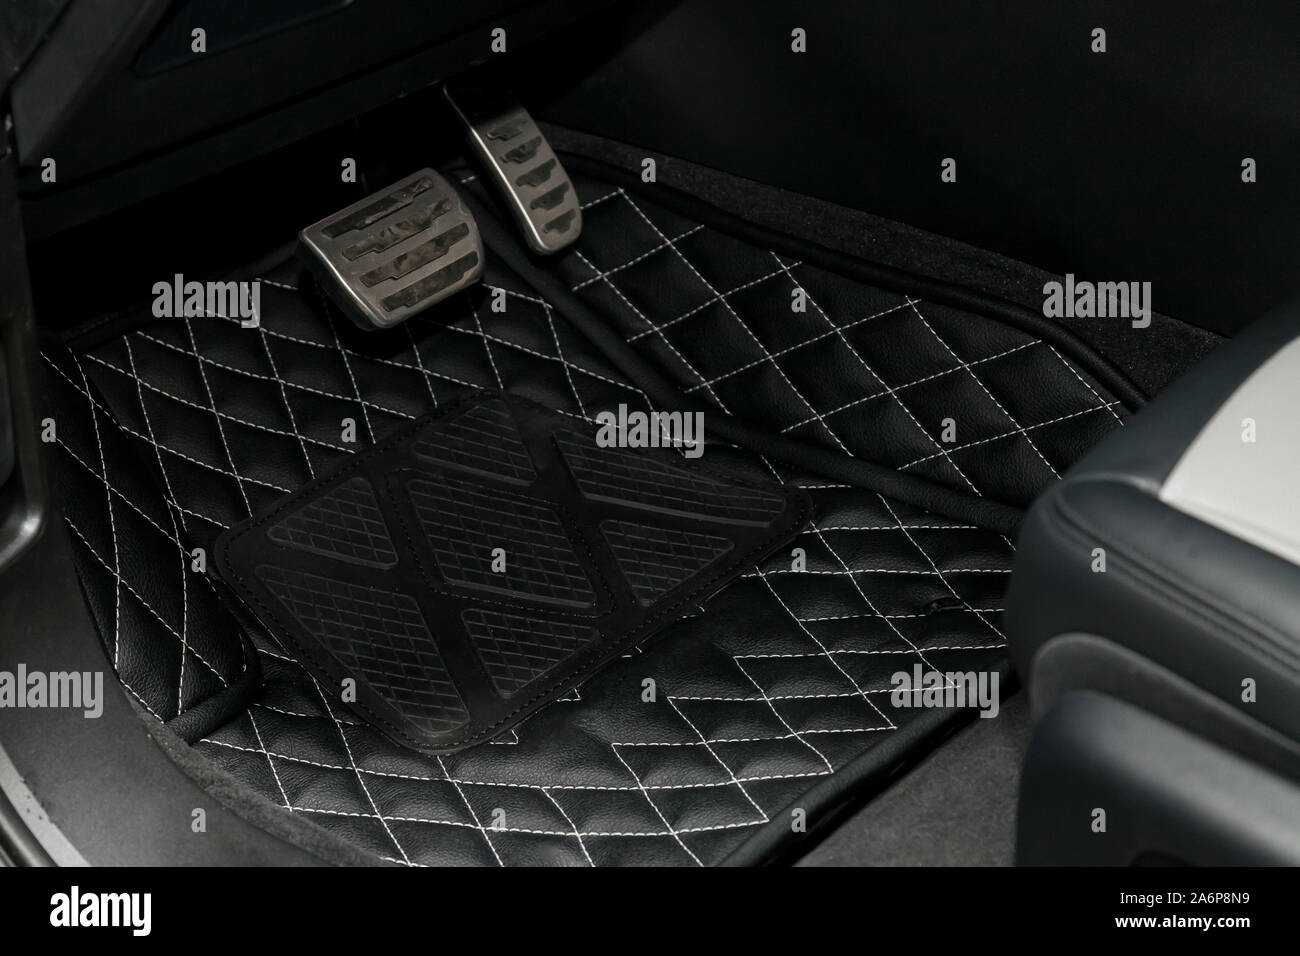 Reinigen schwarz Leder auto Fußmatten mit Diamond Nähte und ein